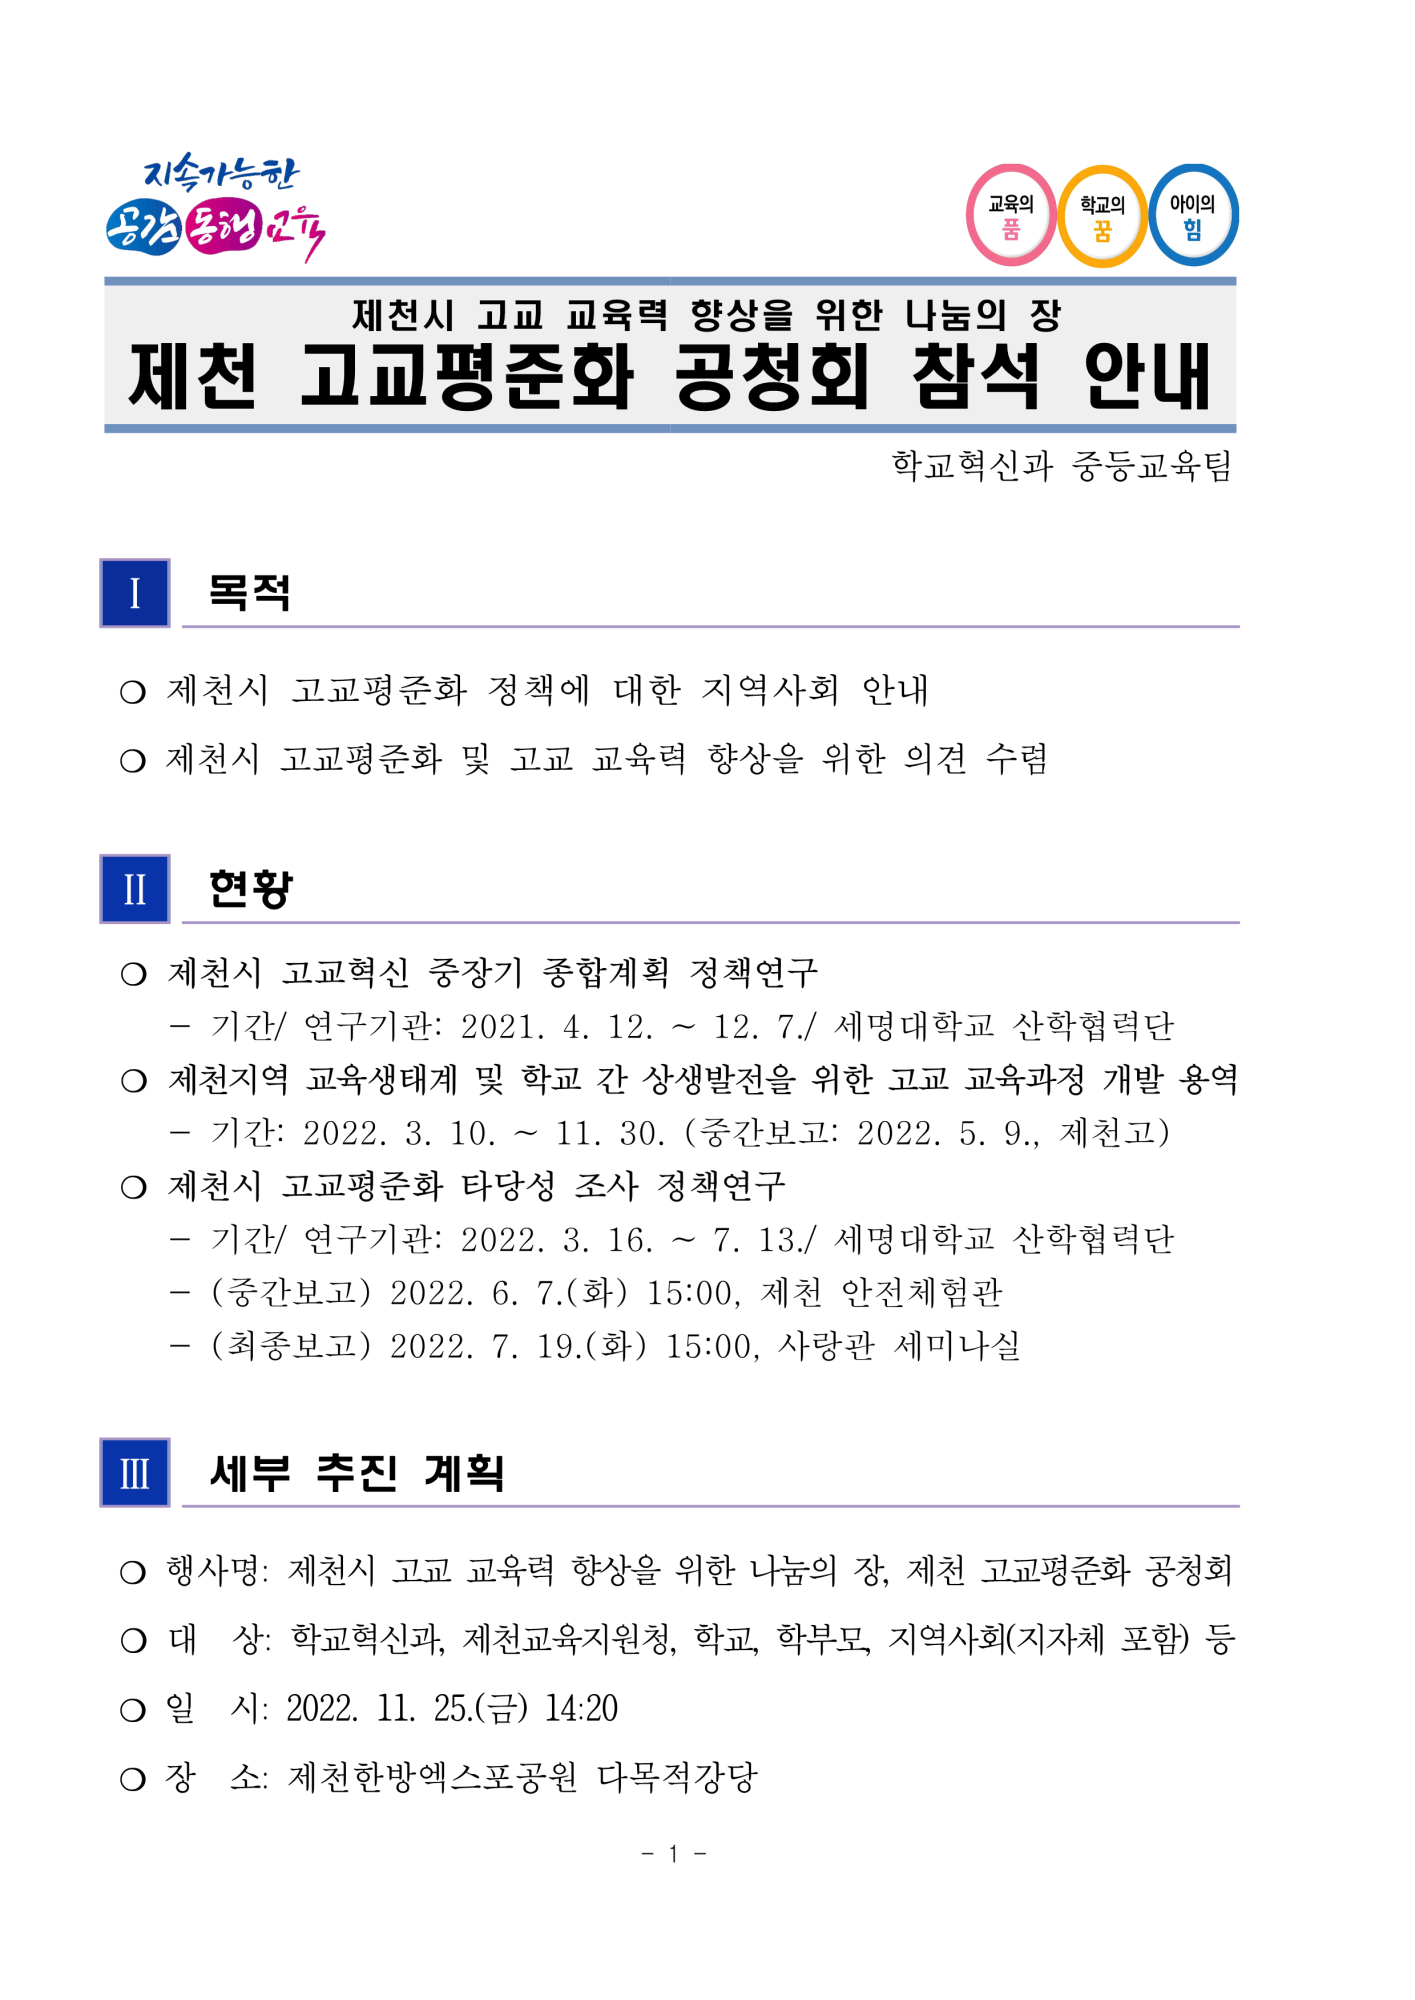 (발송) 제천 고교평준화 공청회 참석 안내_1